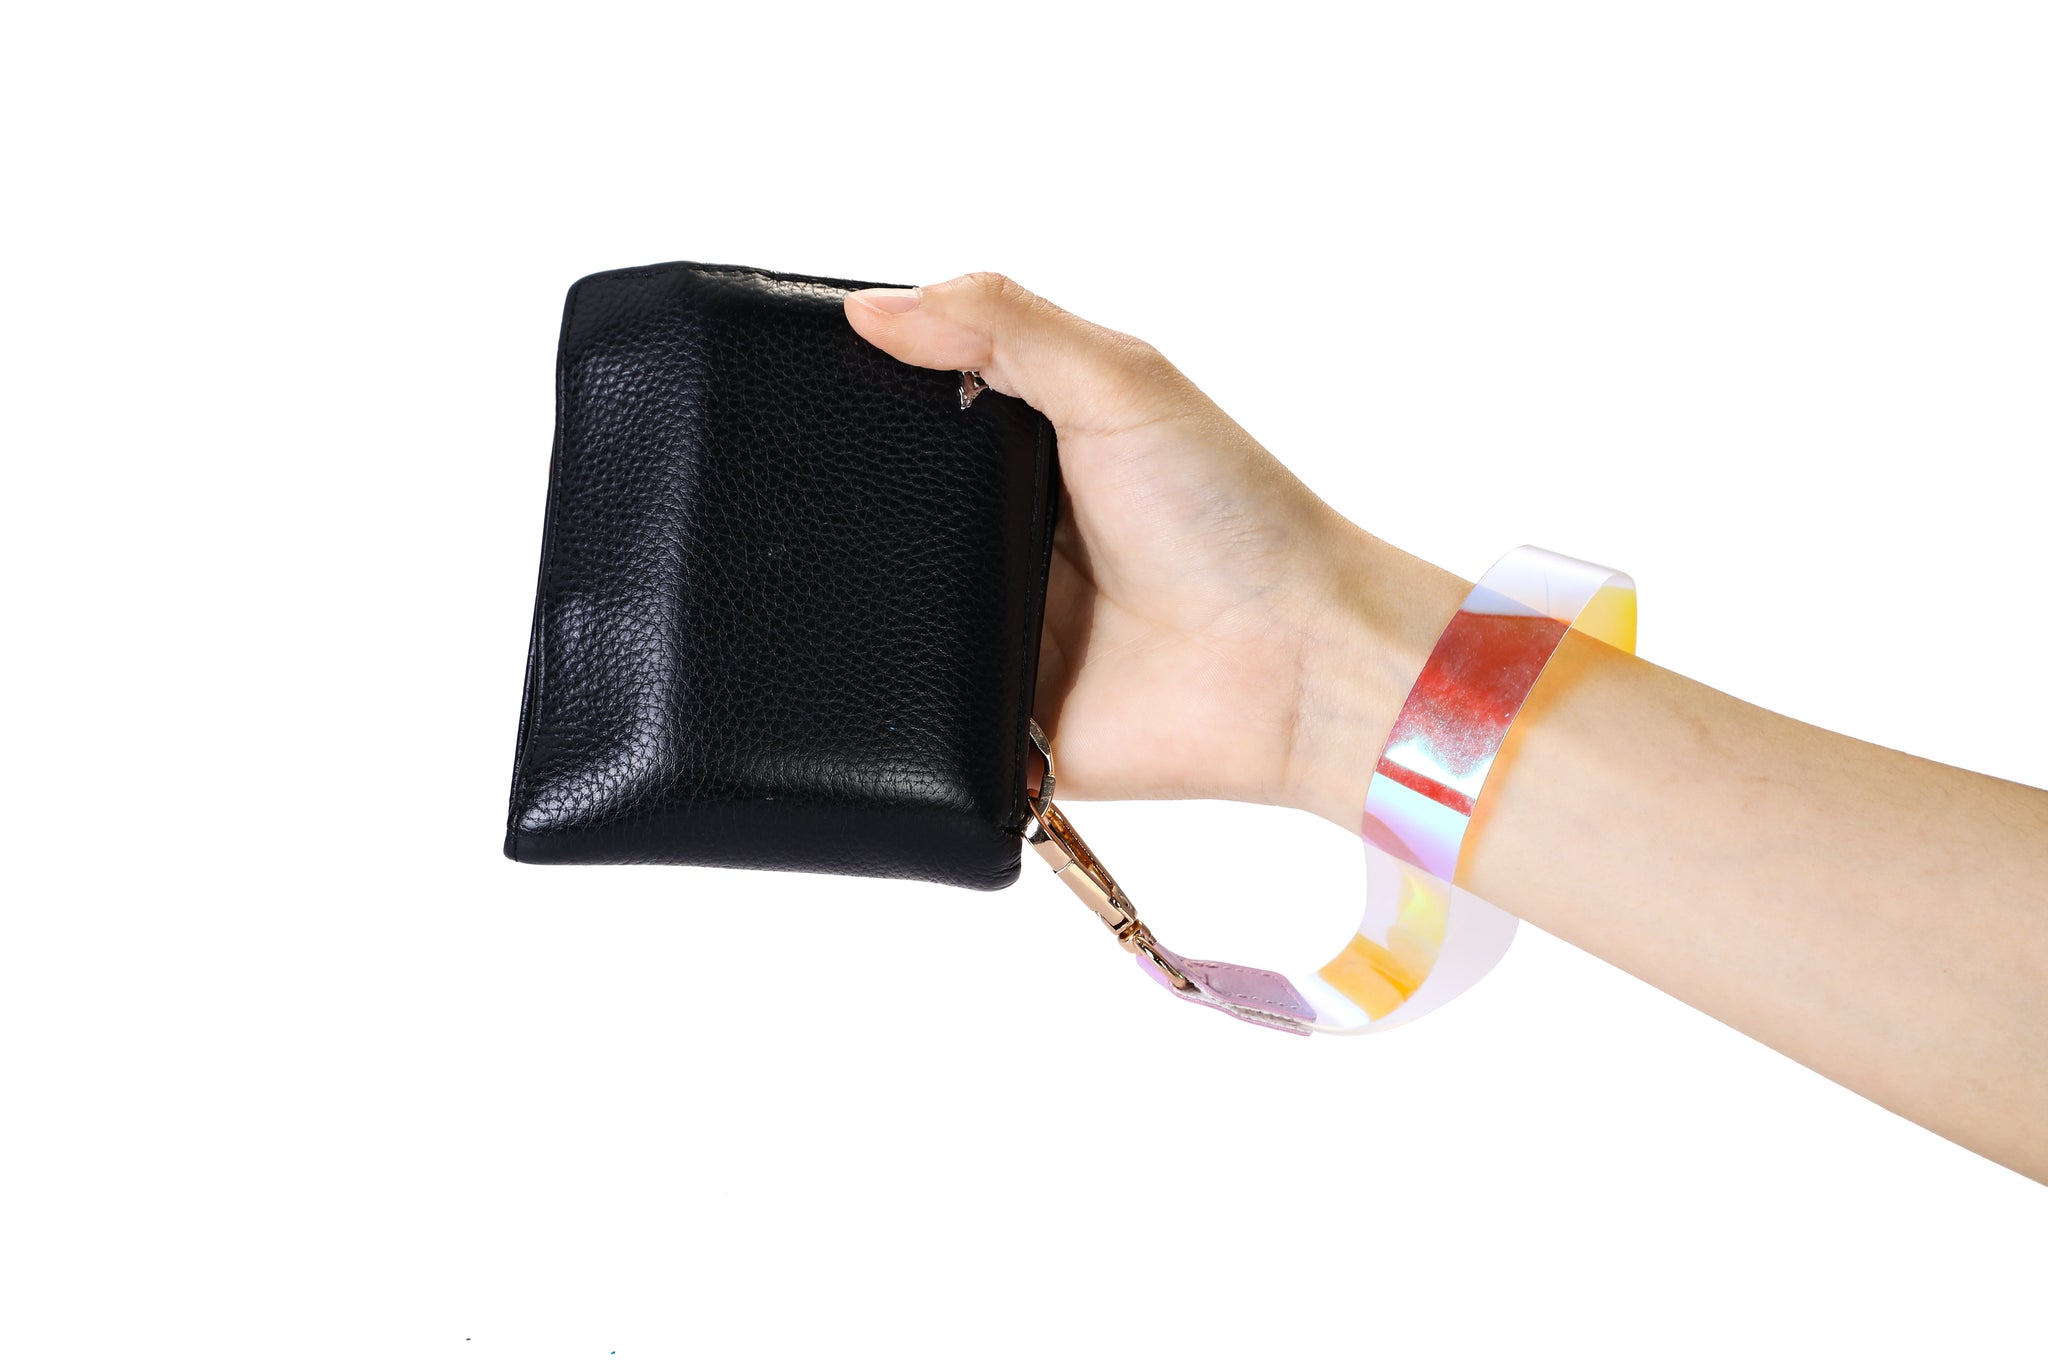 Wrist lanyard for women's wallet